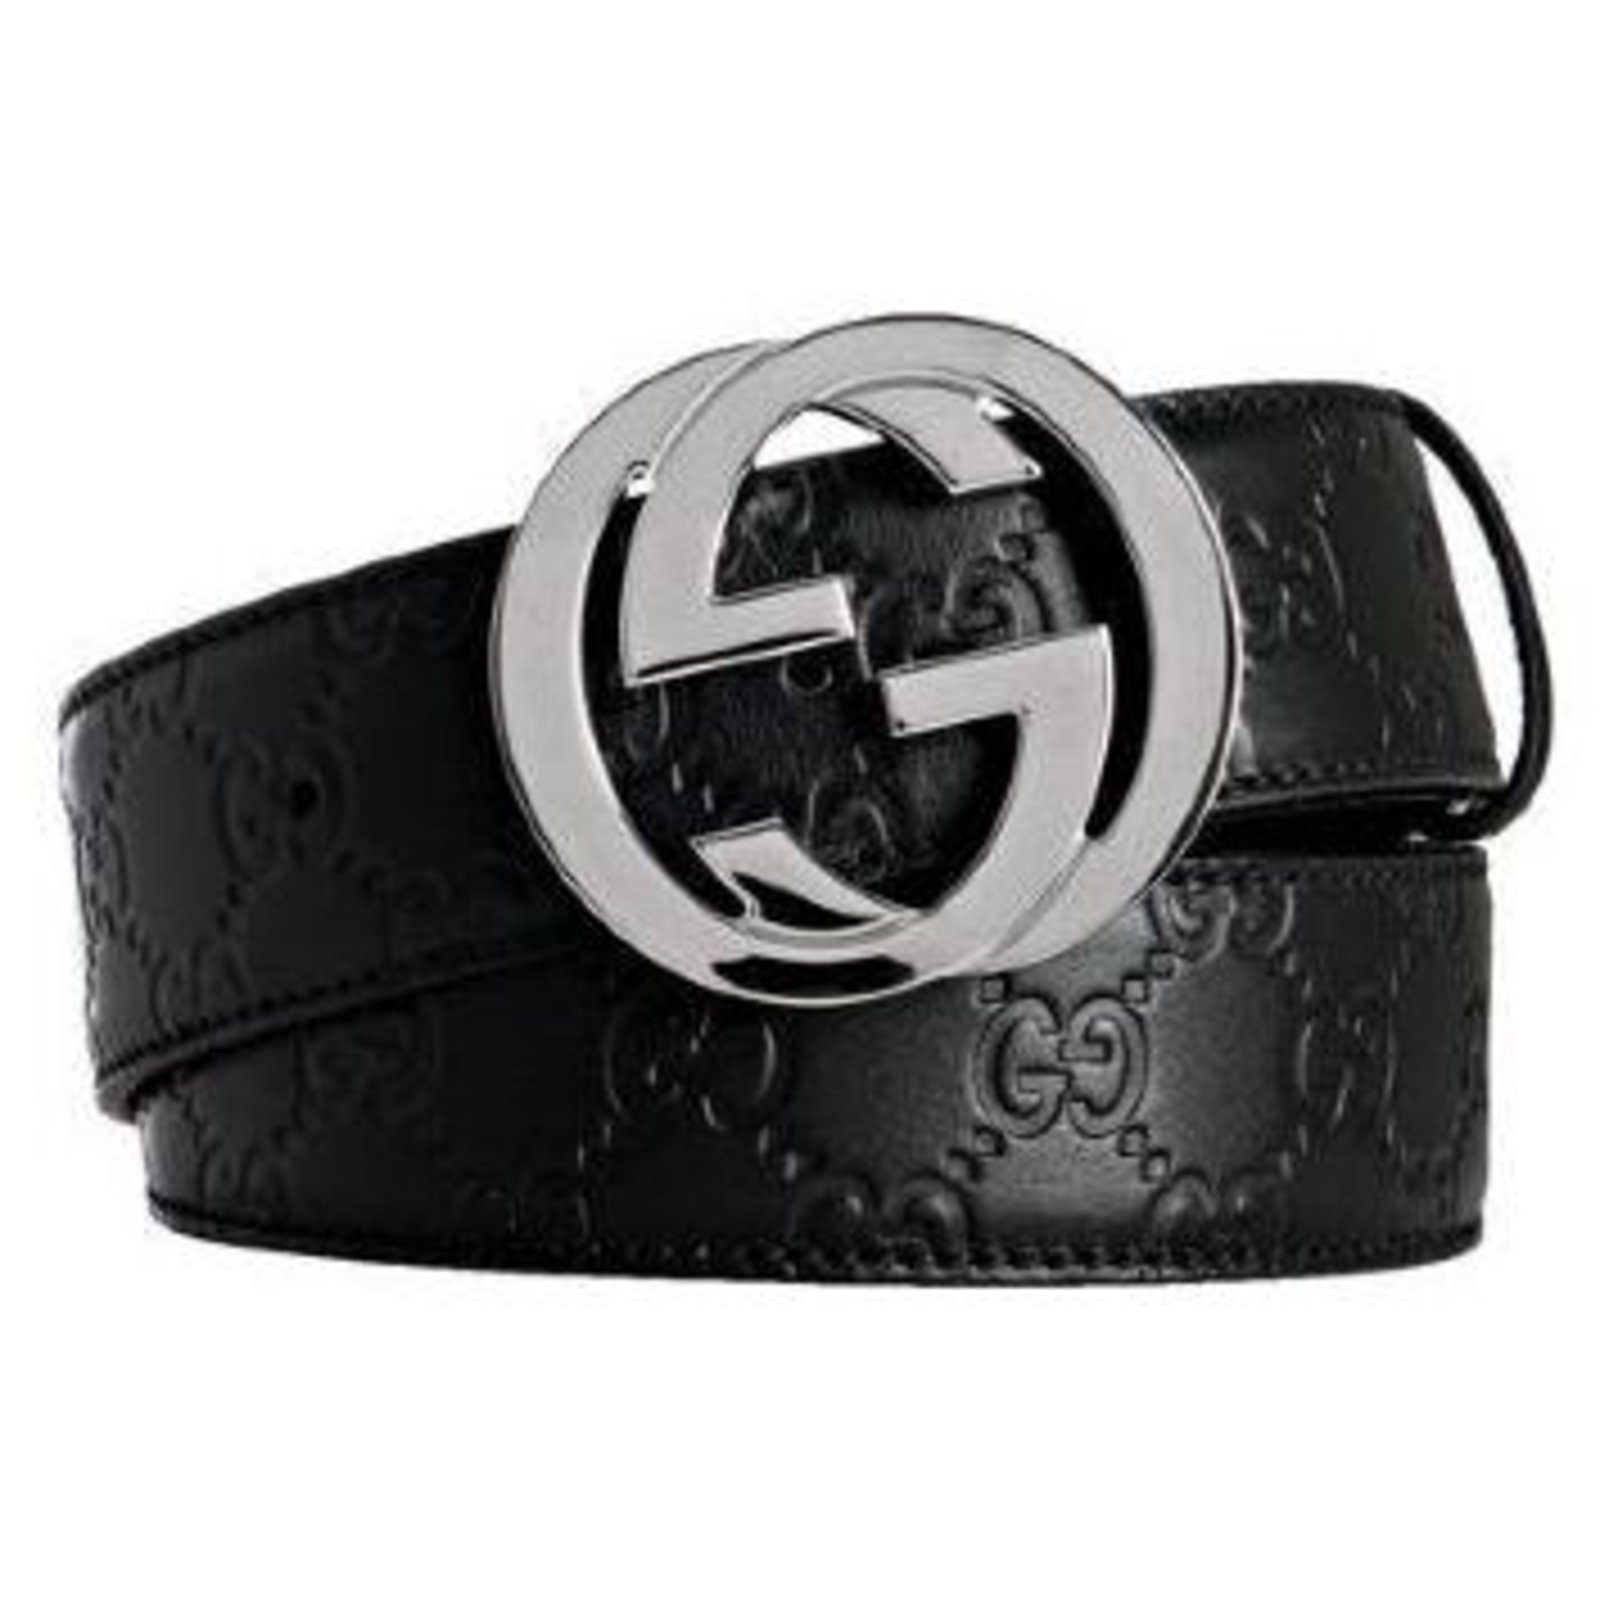 gucci 85 belt